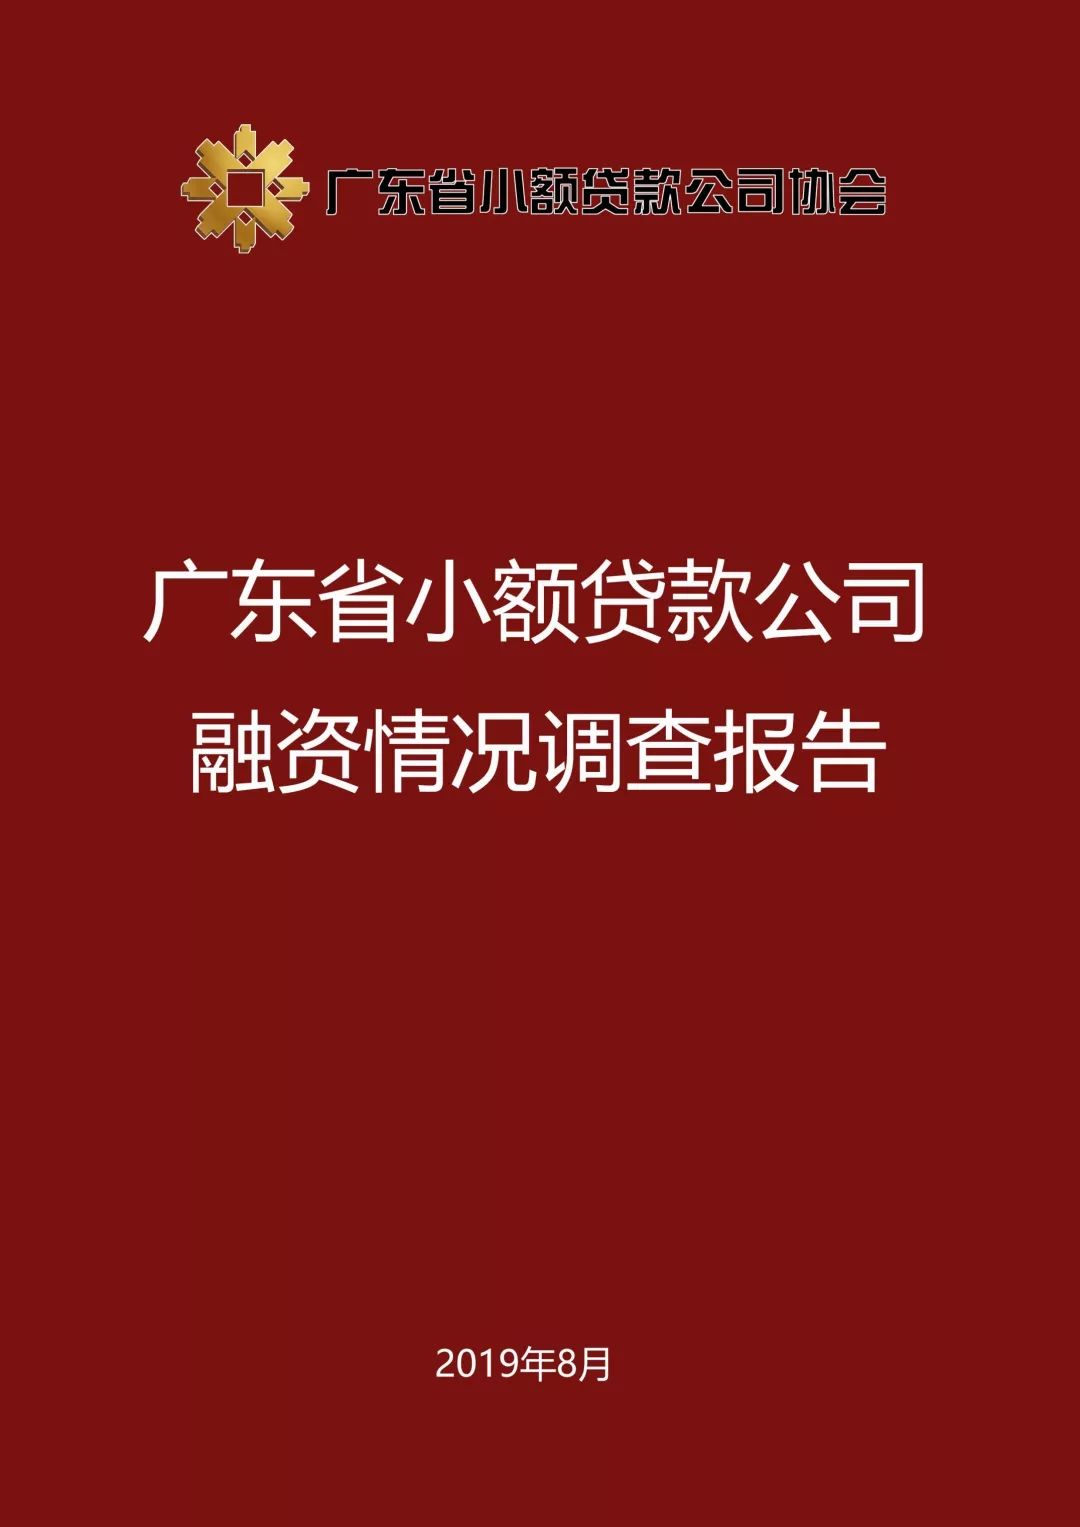 【重磅发布】广东省小额贷款公司融资情况调查报告